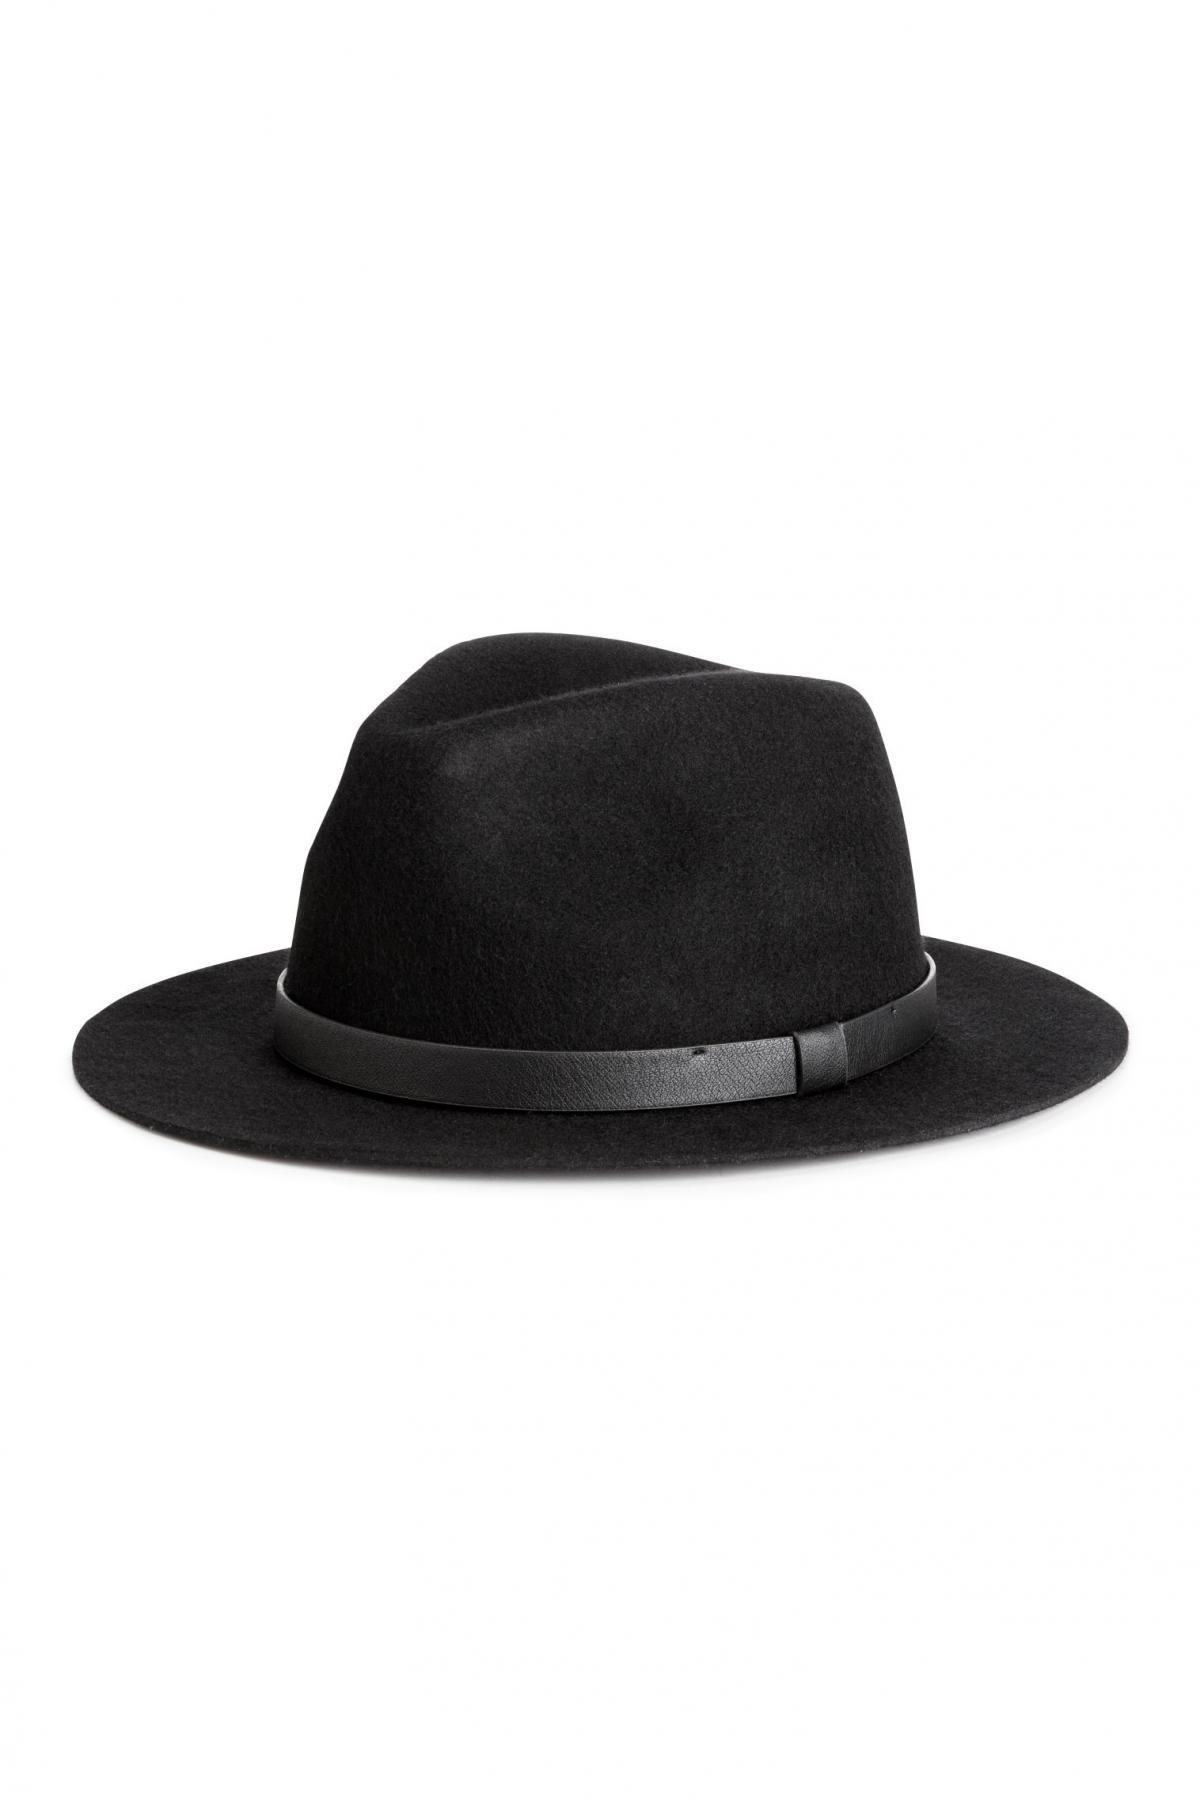 H hat. Шерстяная шляпа. Шляпа HM. Черная фетровая шляпа женская. Летняя черная шляпа HM.